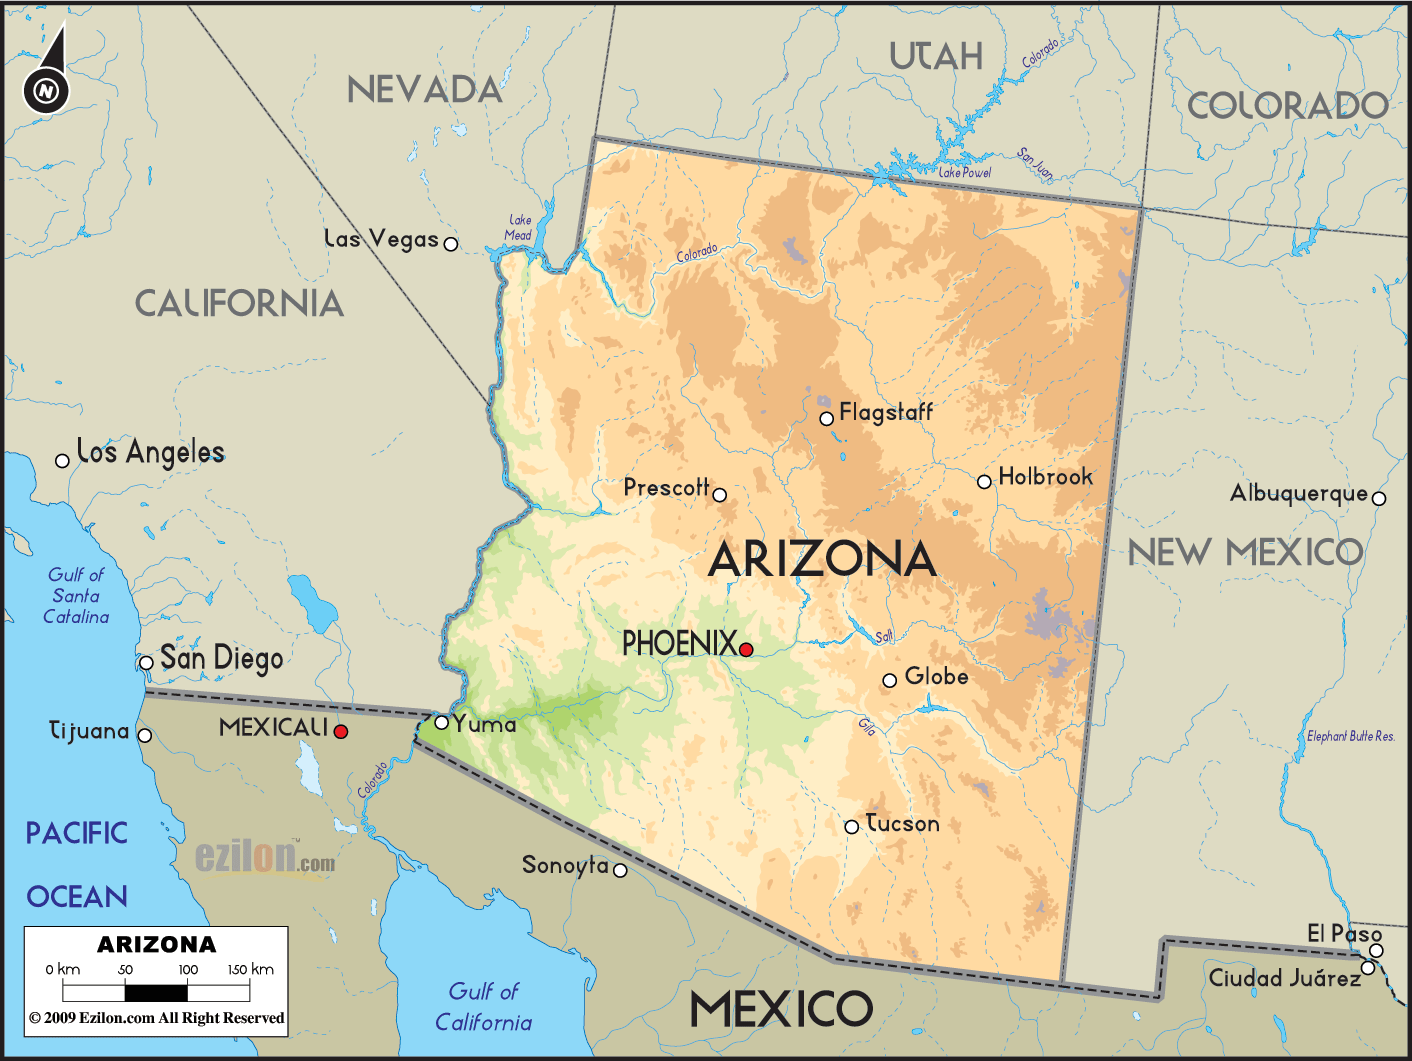 La Mappa Dellarizona Arizona Map Tucson Map Arizona State Map | Images ...